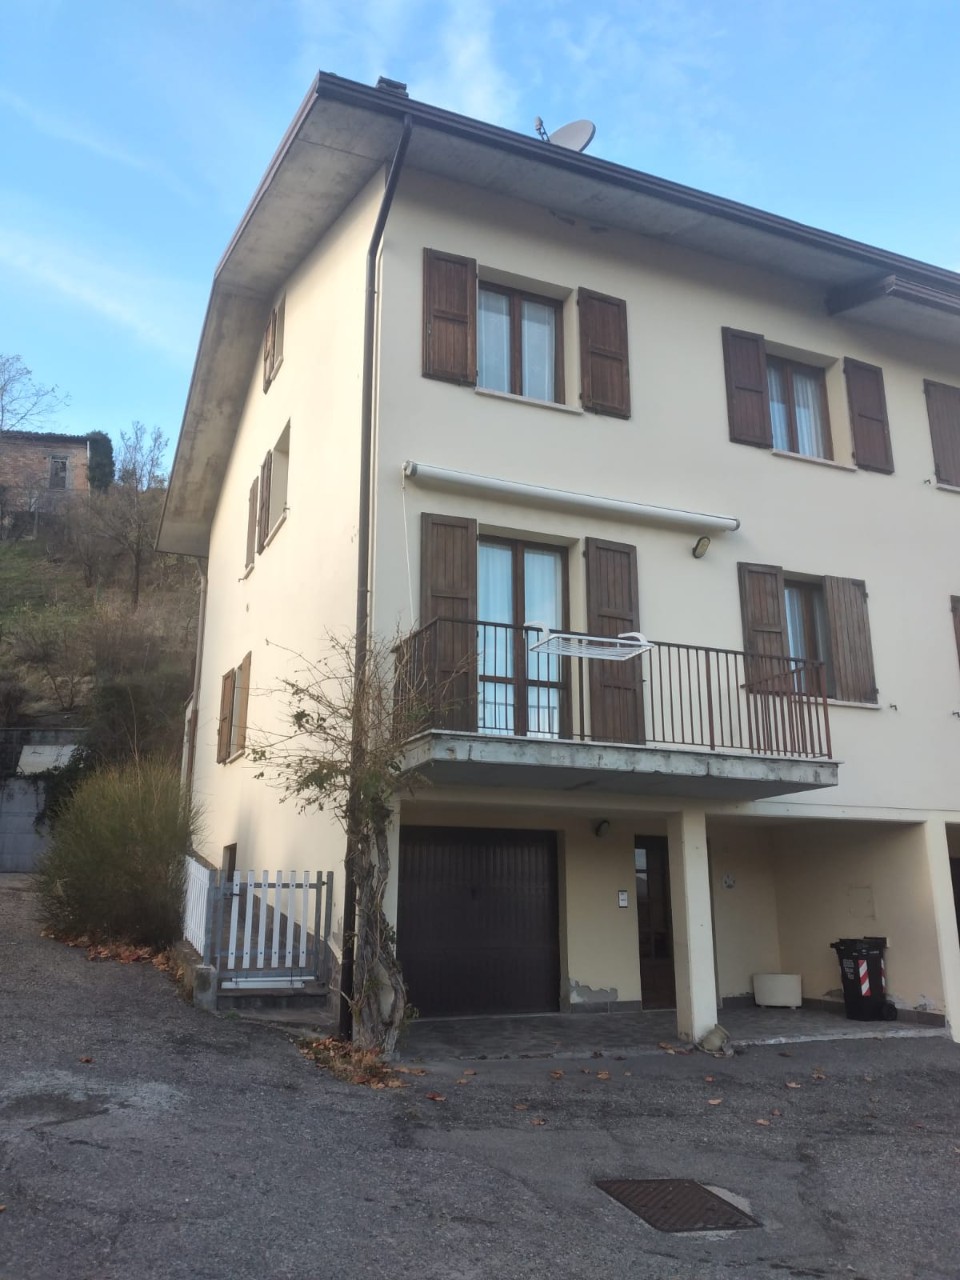 Villetta a schiera angolare in vendita a Castelnovo Ne' Monti (RE)